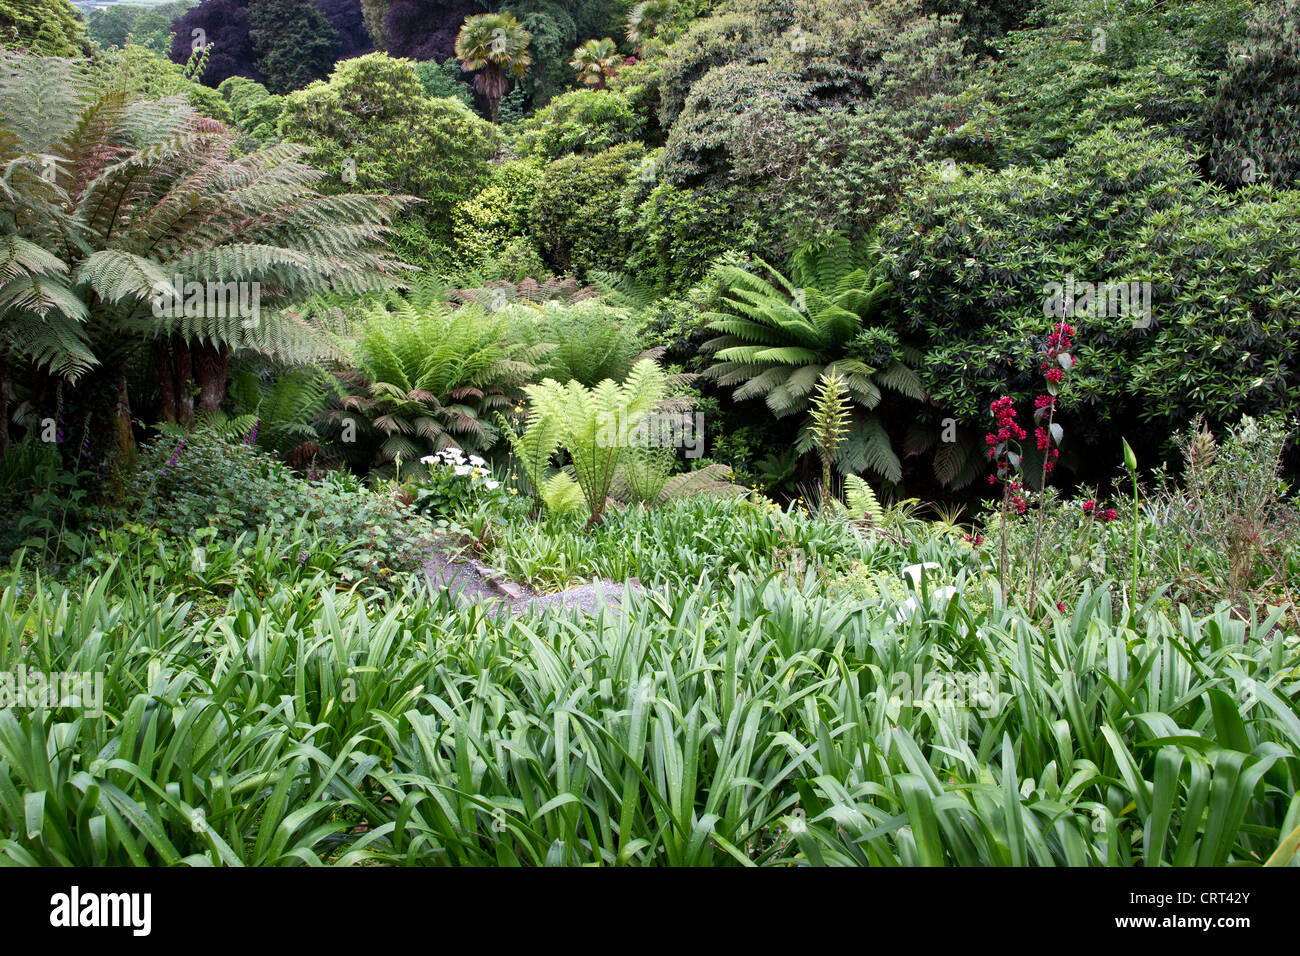 Trebah giardino, di un paradiso sub-tropicale con uno splendido scenario costiero. Uno dei grandi giardini di Cornwall Regno Unito. Foto Stock